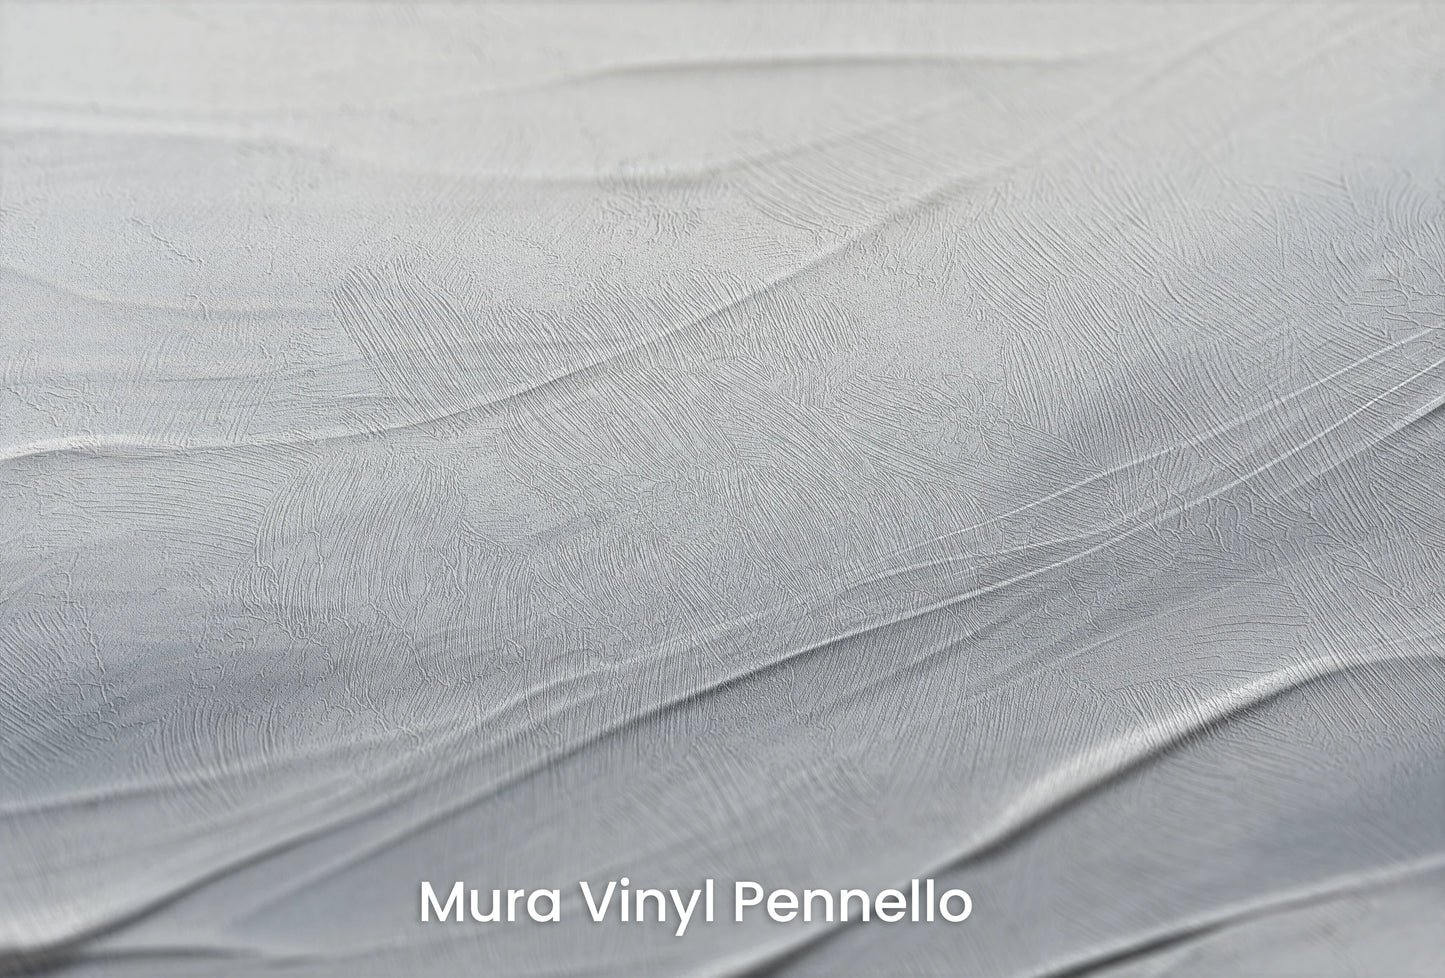 Zbliżenie na artystyczną fototapetę o nazwie Silvered Waves na podłożu Mura Vinyl Pennello - faktura pociągnięć pędzla malarskiego.